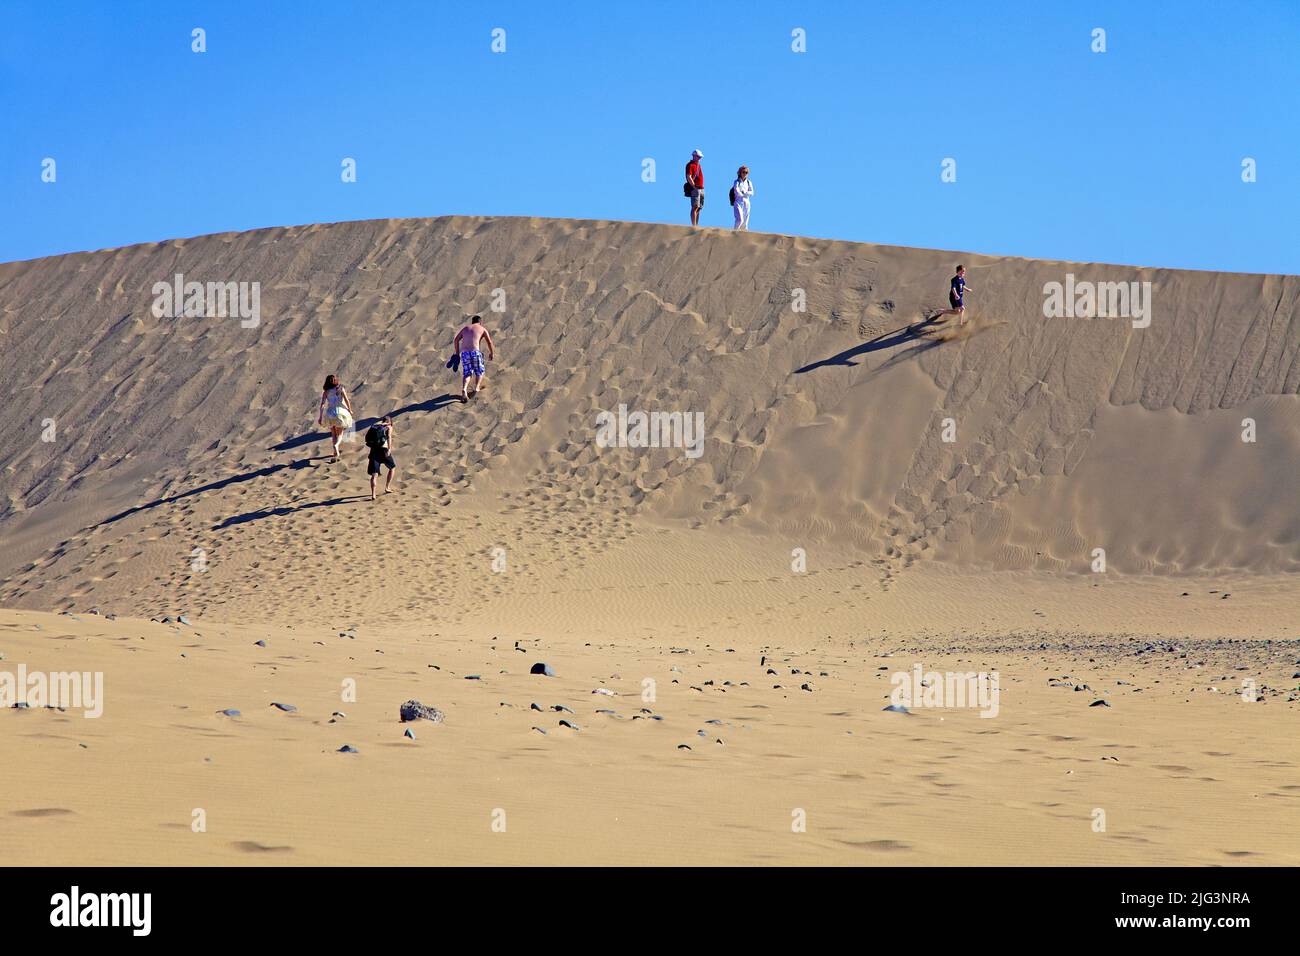 Persone nelle dune, riserva naturale dal 1987, Maspalomas, Grand Canary, isole Canarie, Spagna, Europa Foto Stock